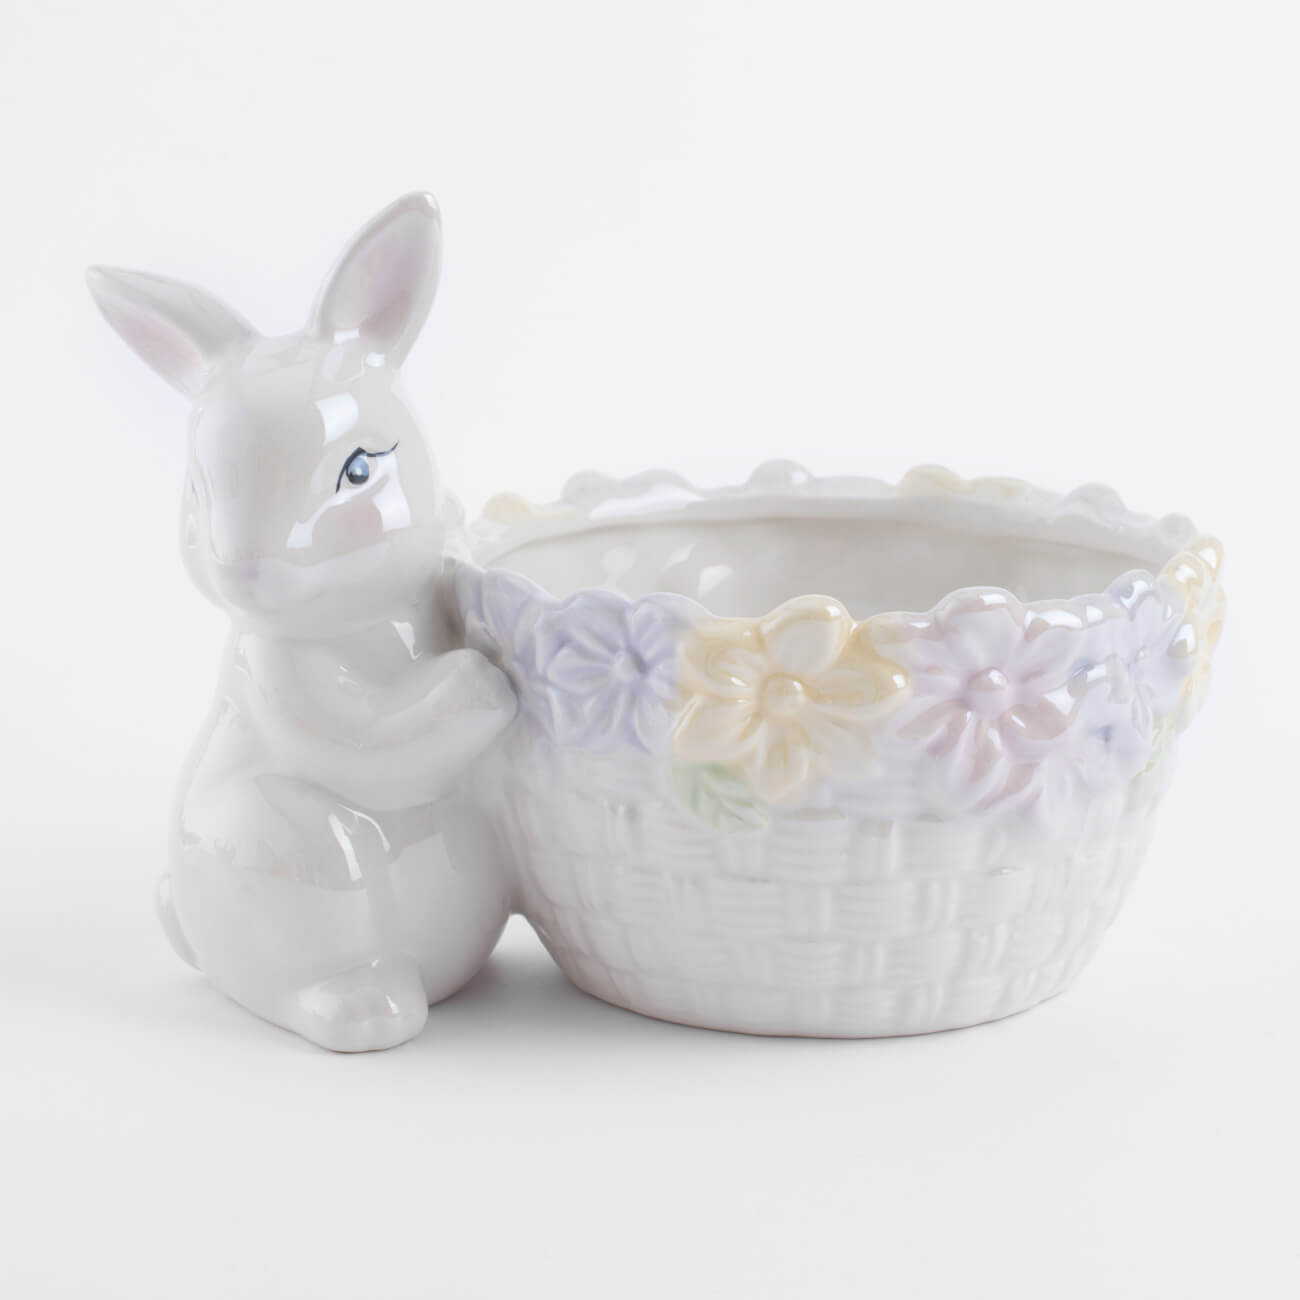 конфетница 18x23 см керамика бело золотистая кролик с плетенной корзиной easter gold Конфетница, 18x13 см, керамика, перламутр, Кролик с корзиной в цветах, Easter